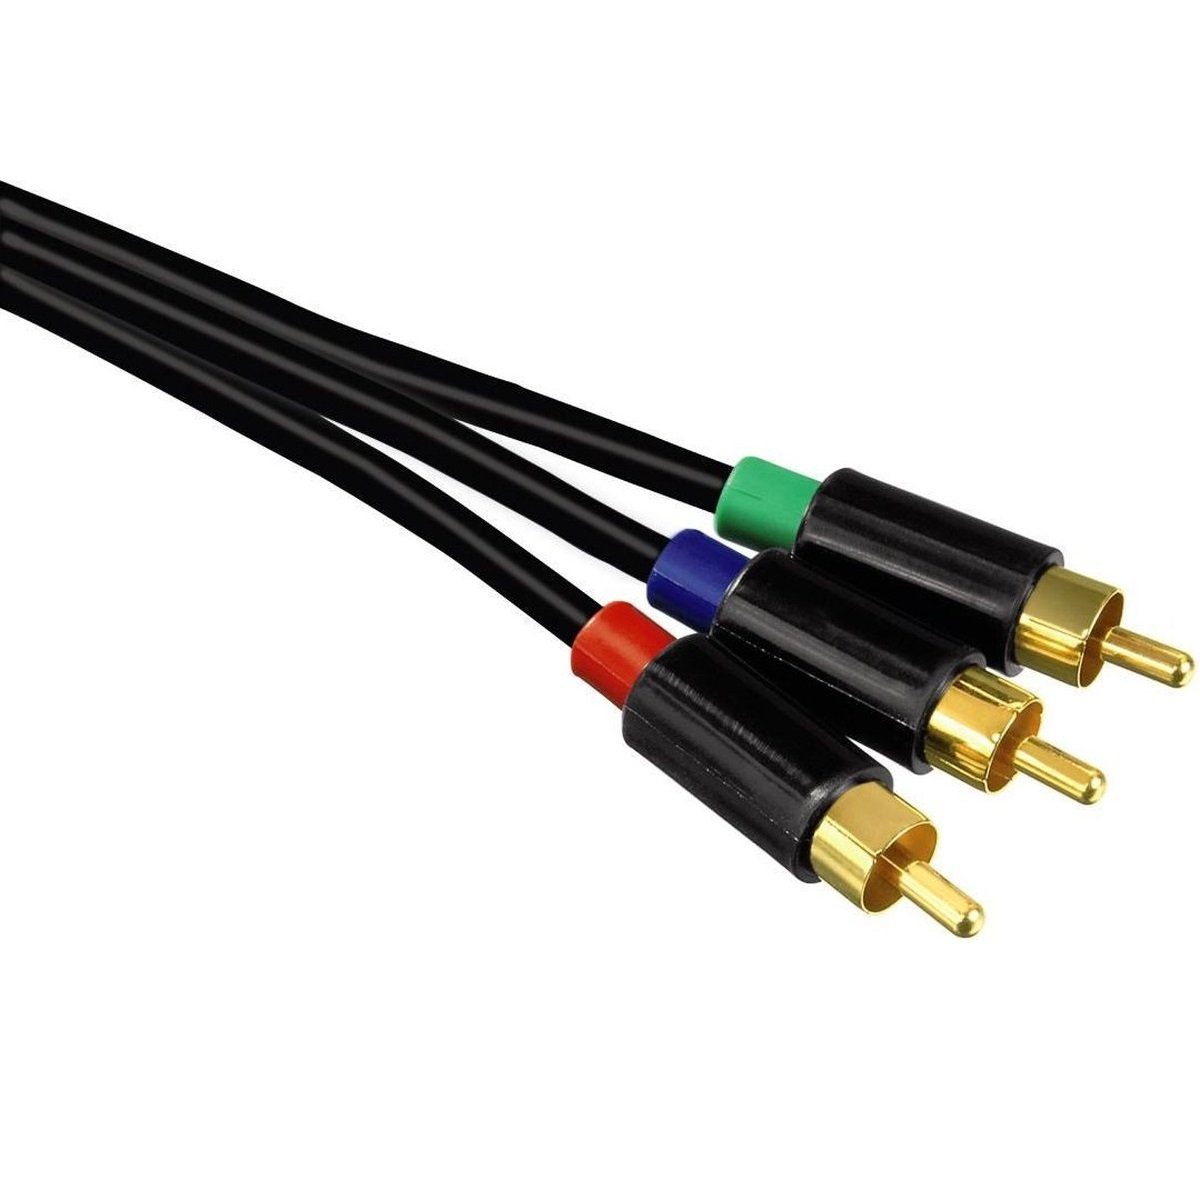 Hama 1,5m YUV Komponenten-Kabel RGB Component HDTV Video-Kabel, Cinch, Cinch,  Koax HD TV Kabel mit RCA- Chinch-Anschluss YUV, für TV, Receiver etc